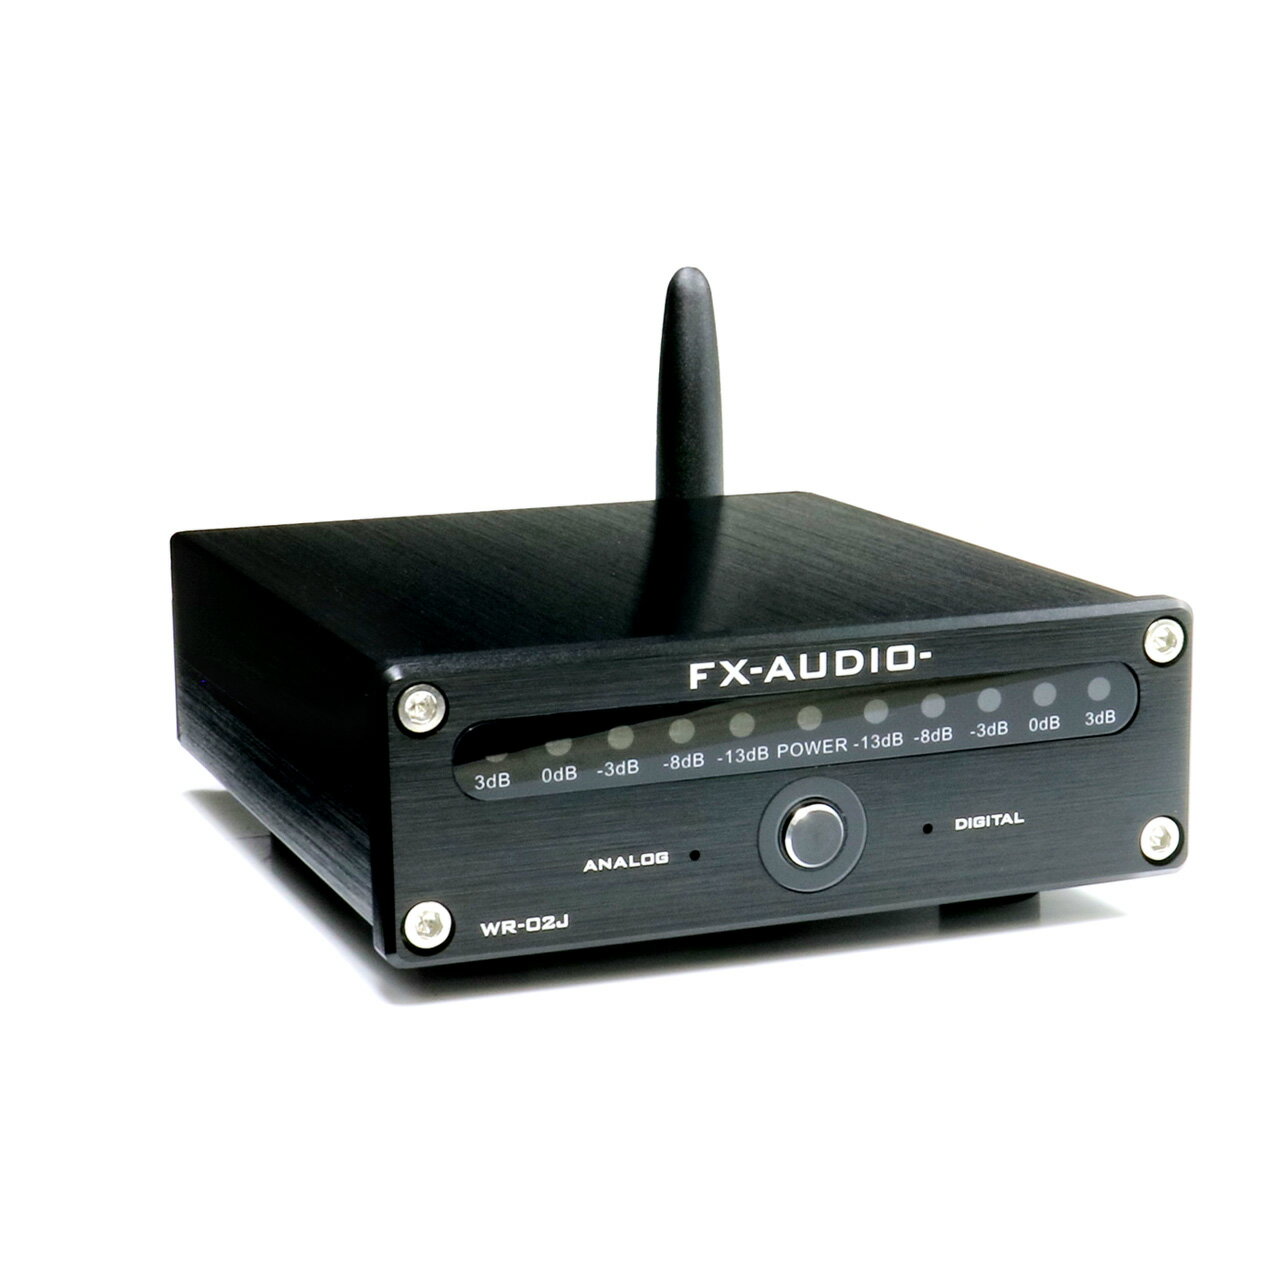 送料無料 FX-AUDIO- WR-02J高音質 低遅延 Bluetooth レシーバー 光 同軸 RCA 3系統出力 オーディオ専用設計 VUメーター ワイヤレス 無線 BT aptX aptX HD LL